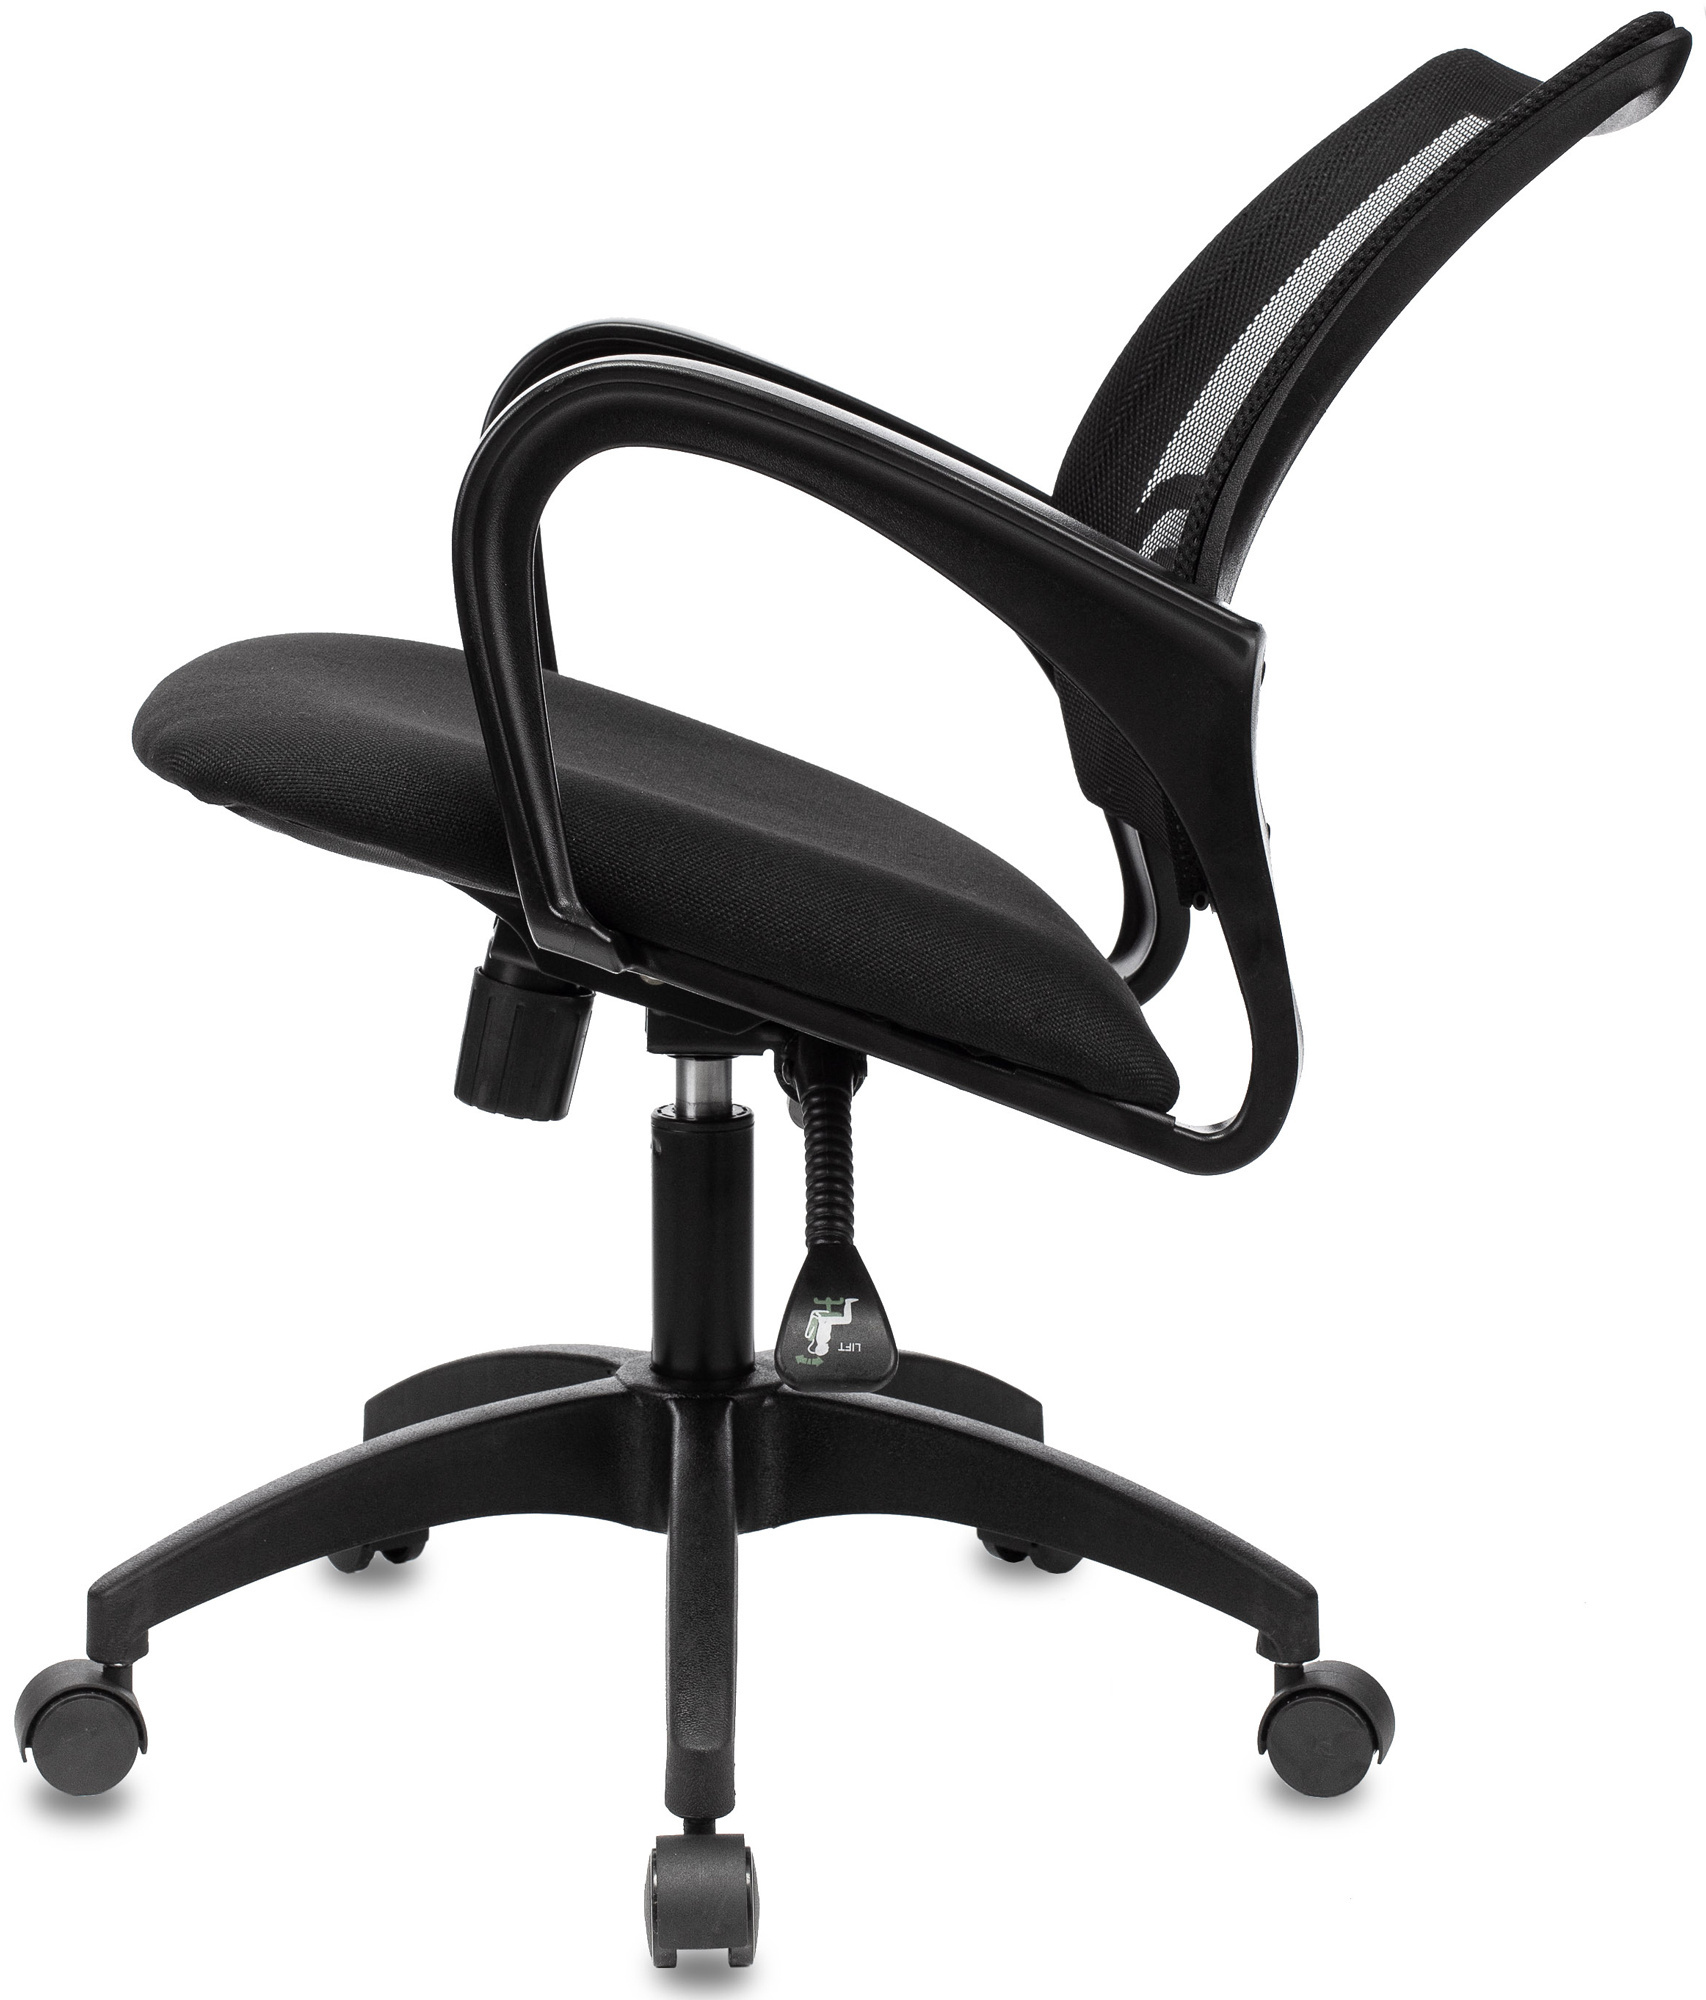 Ch-695n, на колесиках, сетка/ткань, черный [Ch-695n/Black]. Офисное кресло Люкс.